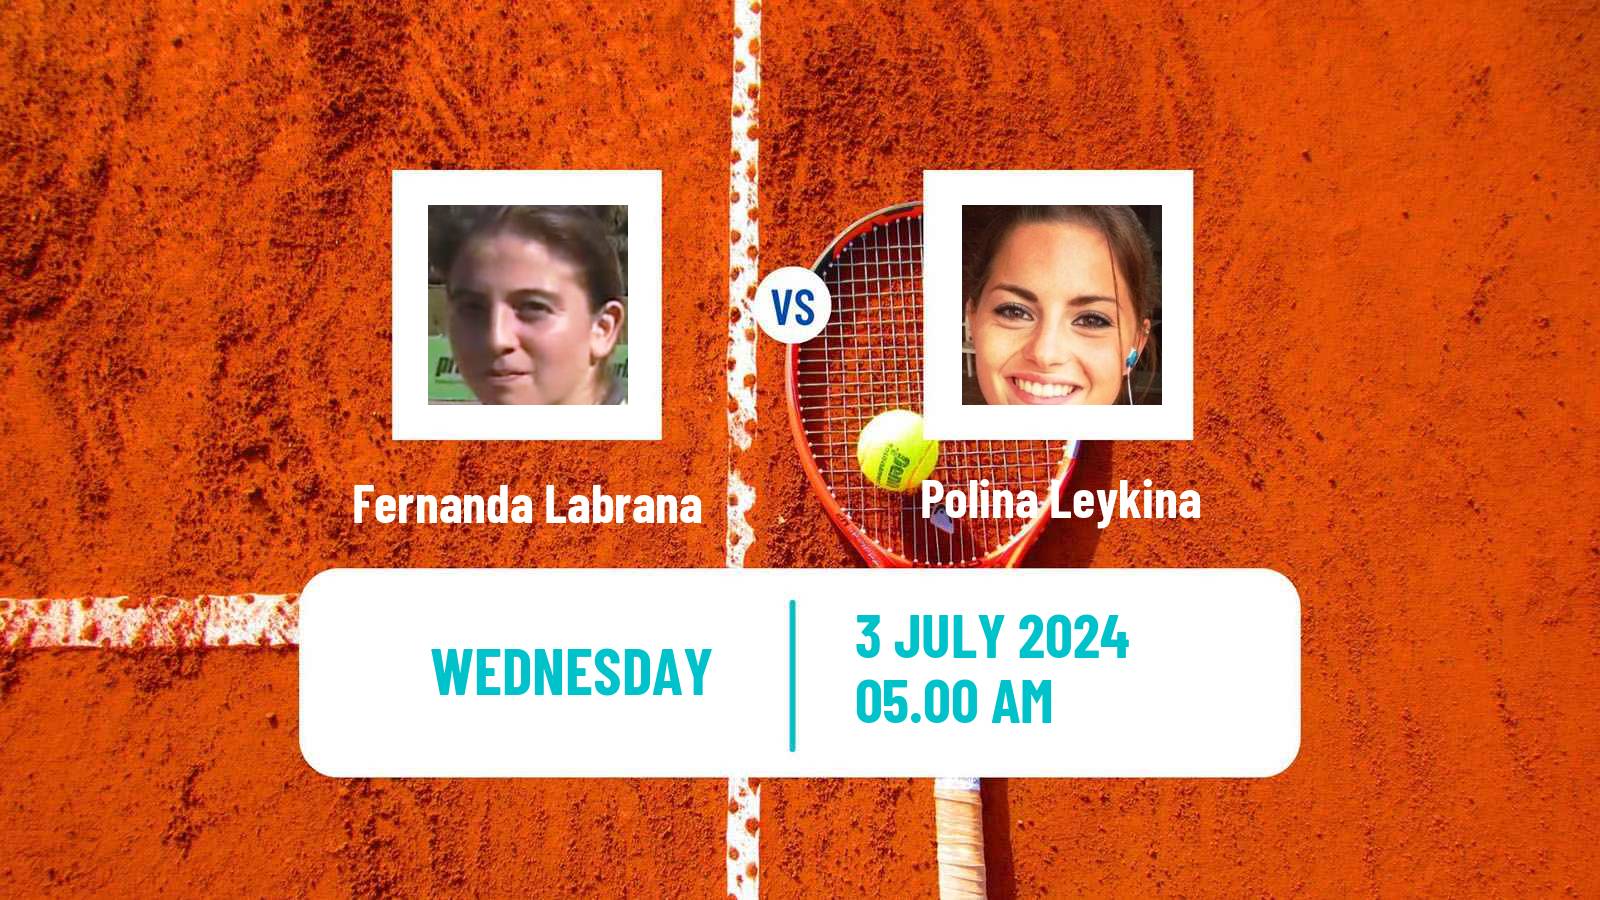 Tennis ITF W35 Rome Women Fernanda Labrana - Polina Leykina